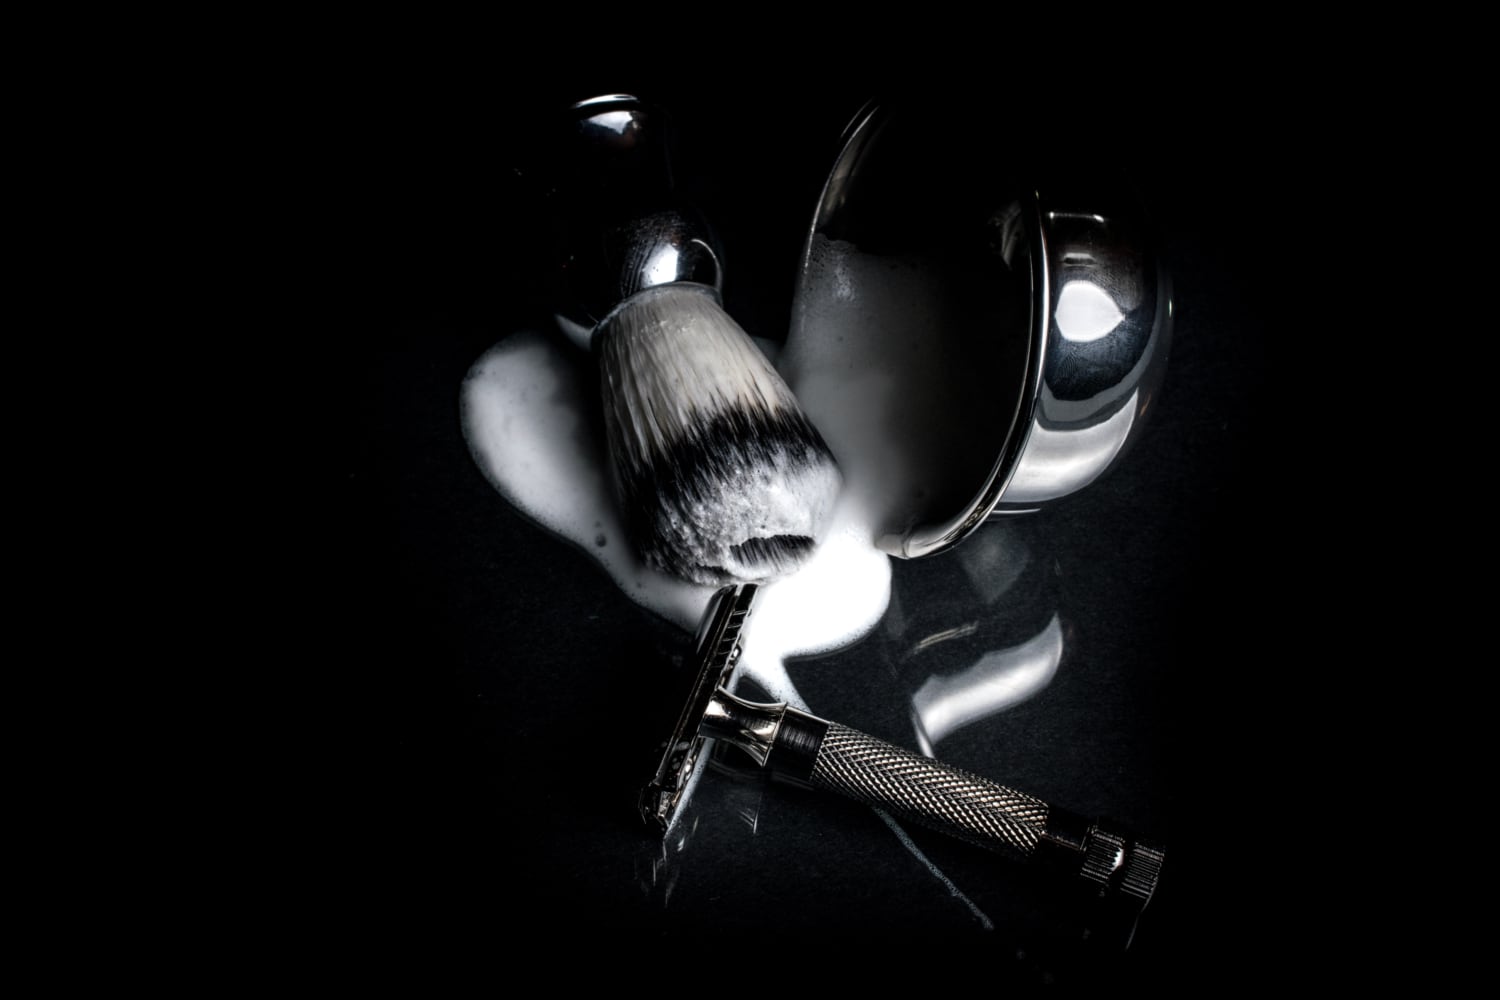 safety razor next to bowl and shaving brush